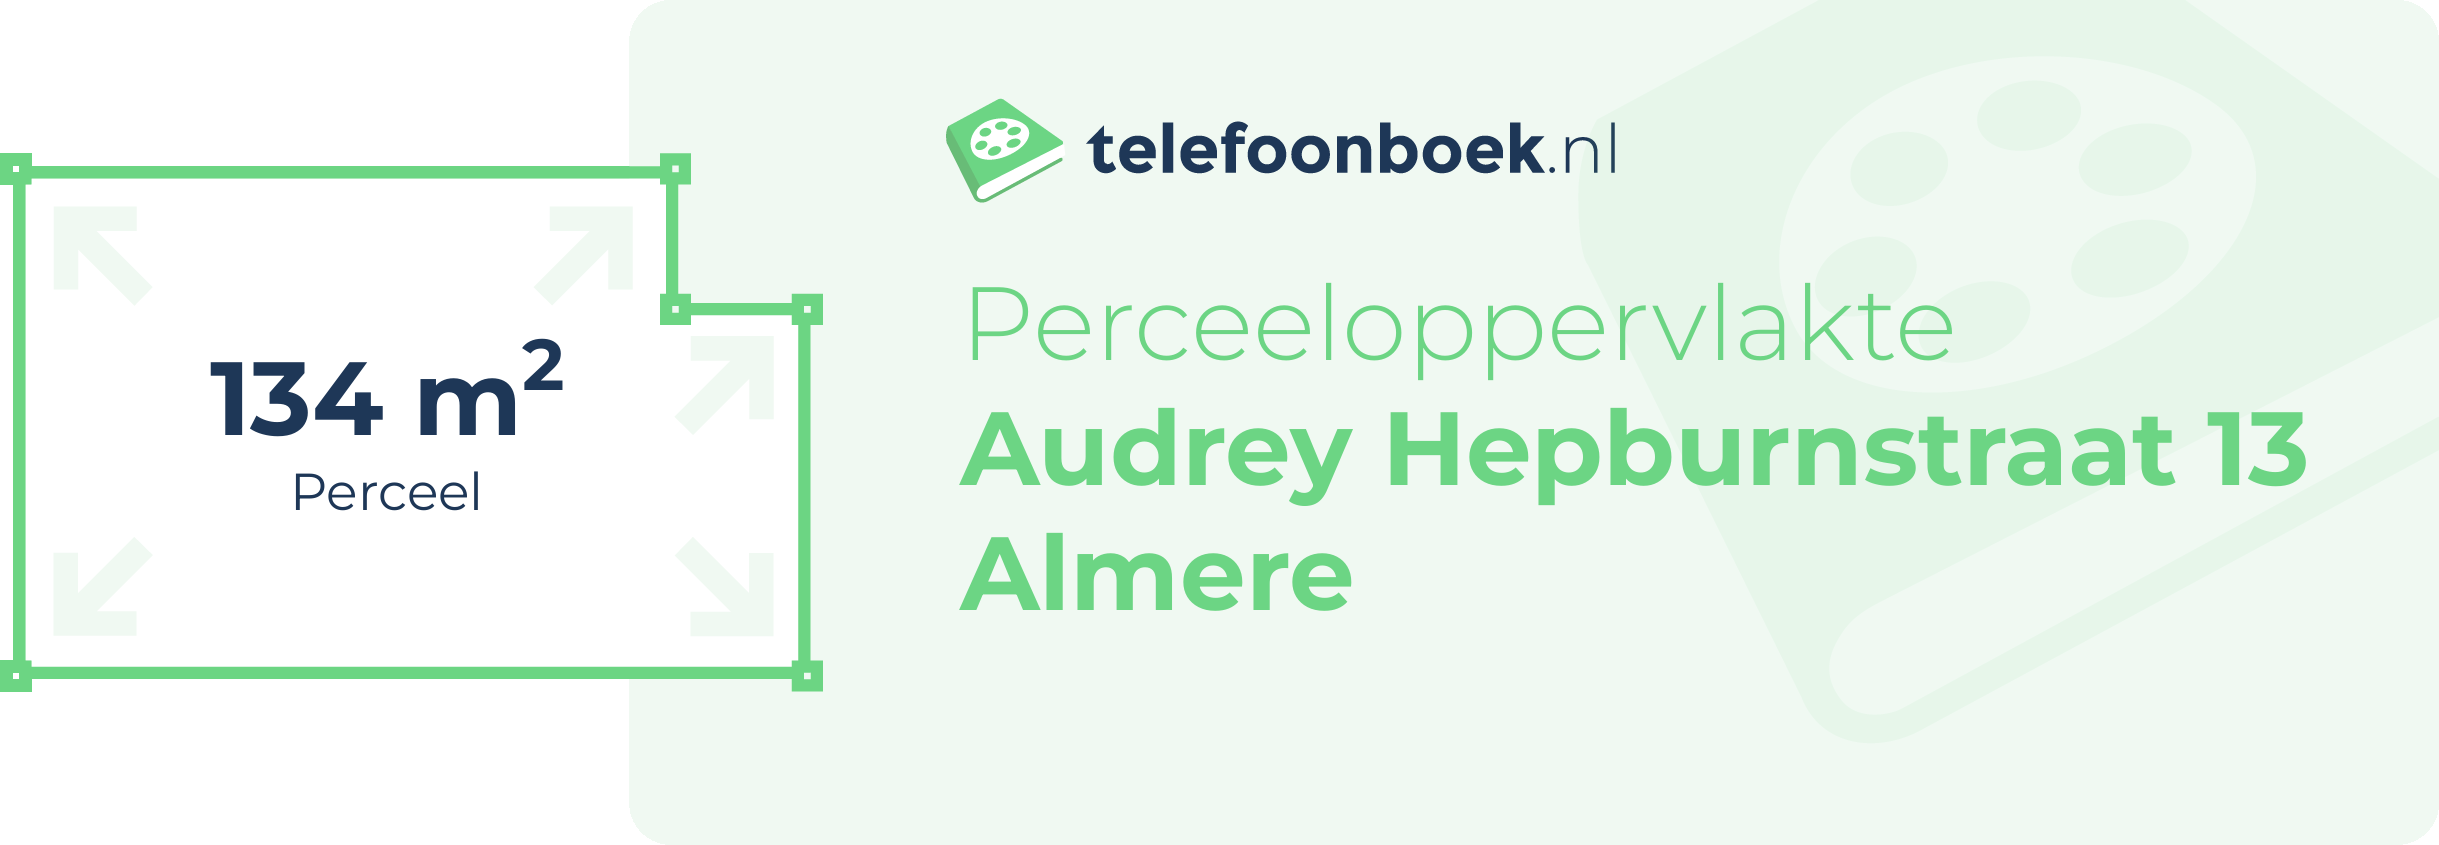 Perceeloppervlakte Audrey Hepburnstraat 13 Almere